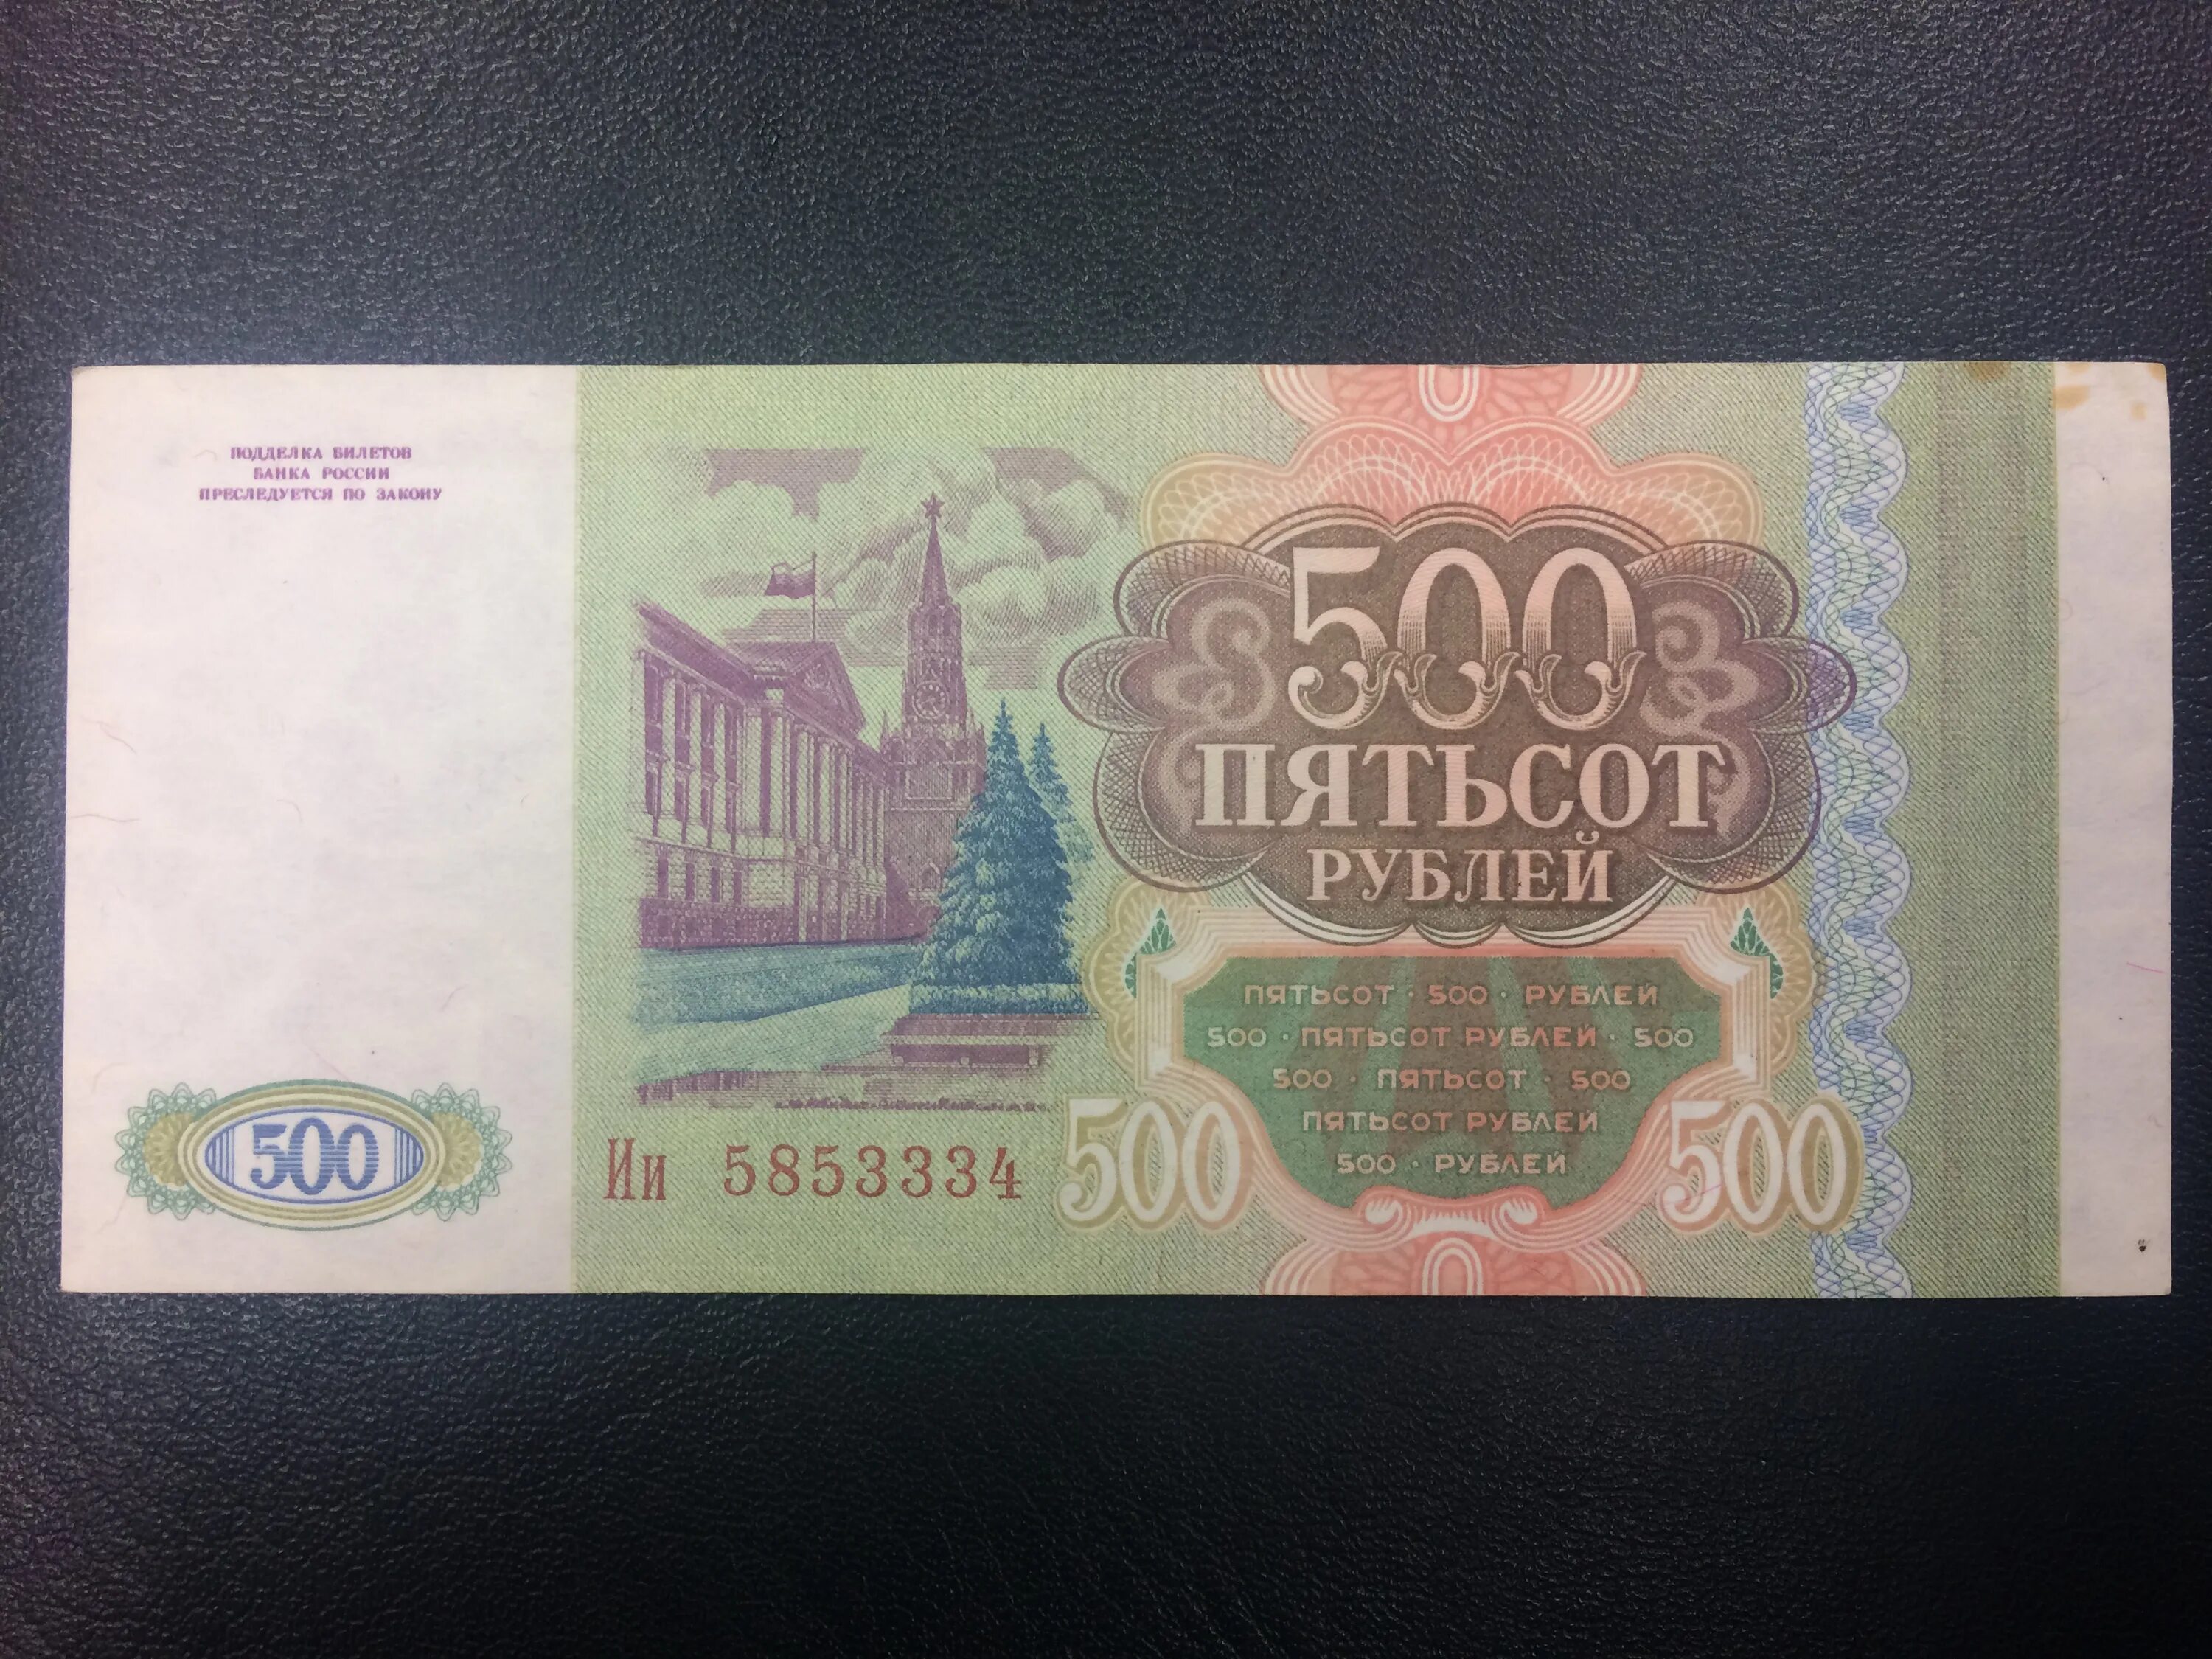 Долями 500 рублей. 500 Рублей 1993. Купюра 500 рублей 1993 года. Пятьсот рублей 1993 года. Купюра 500 рублей 1993.